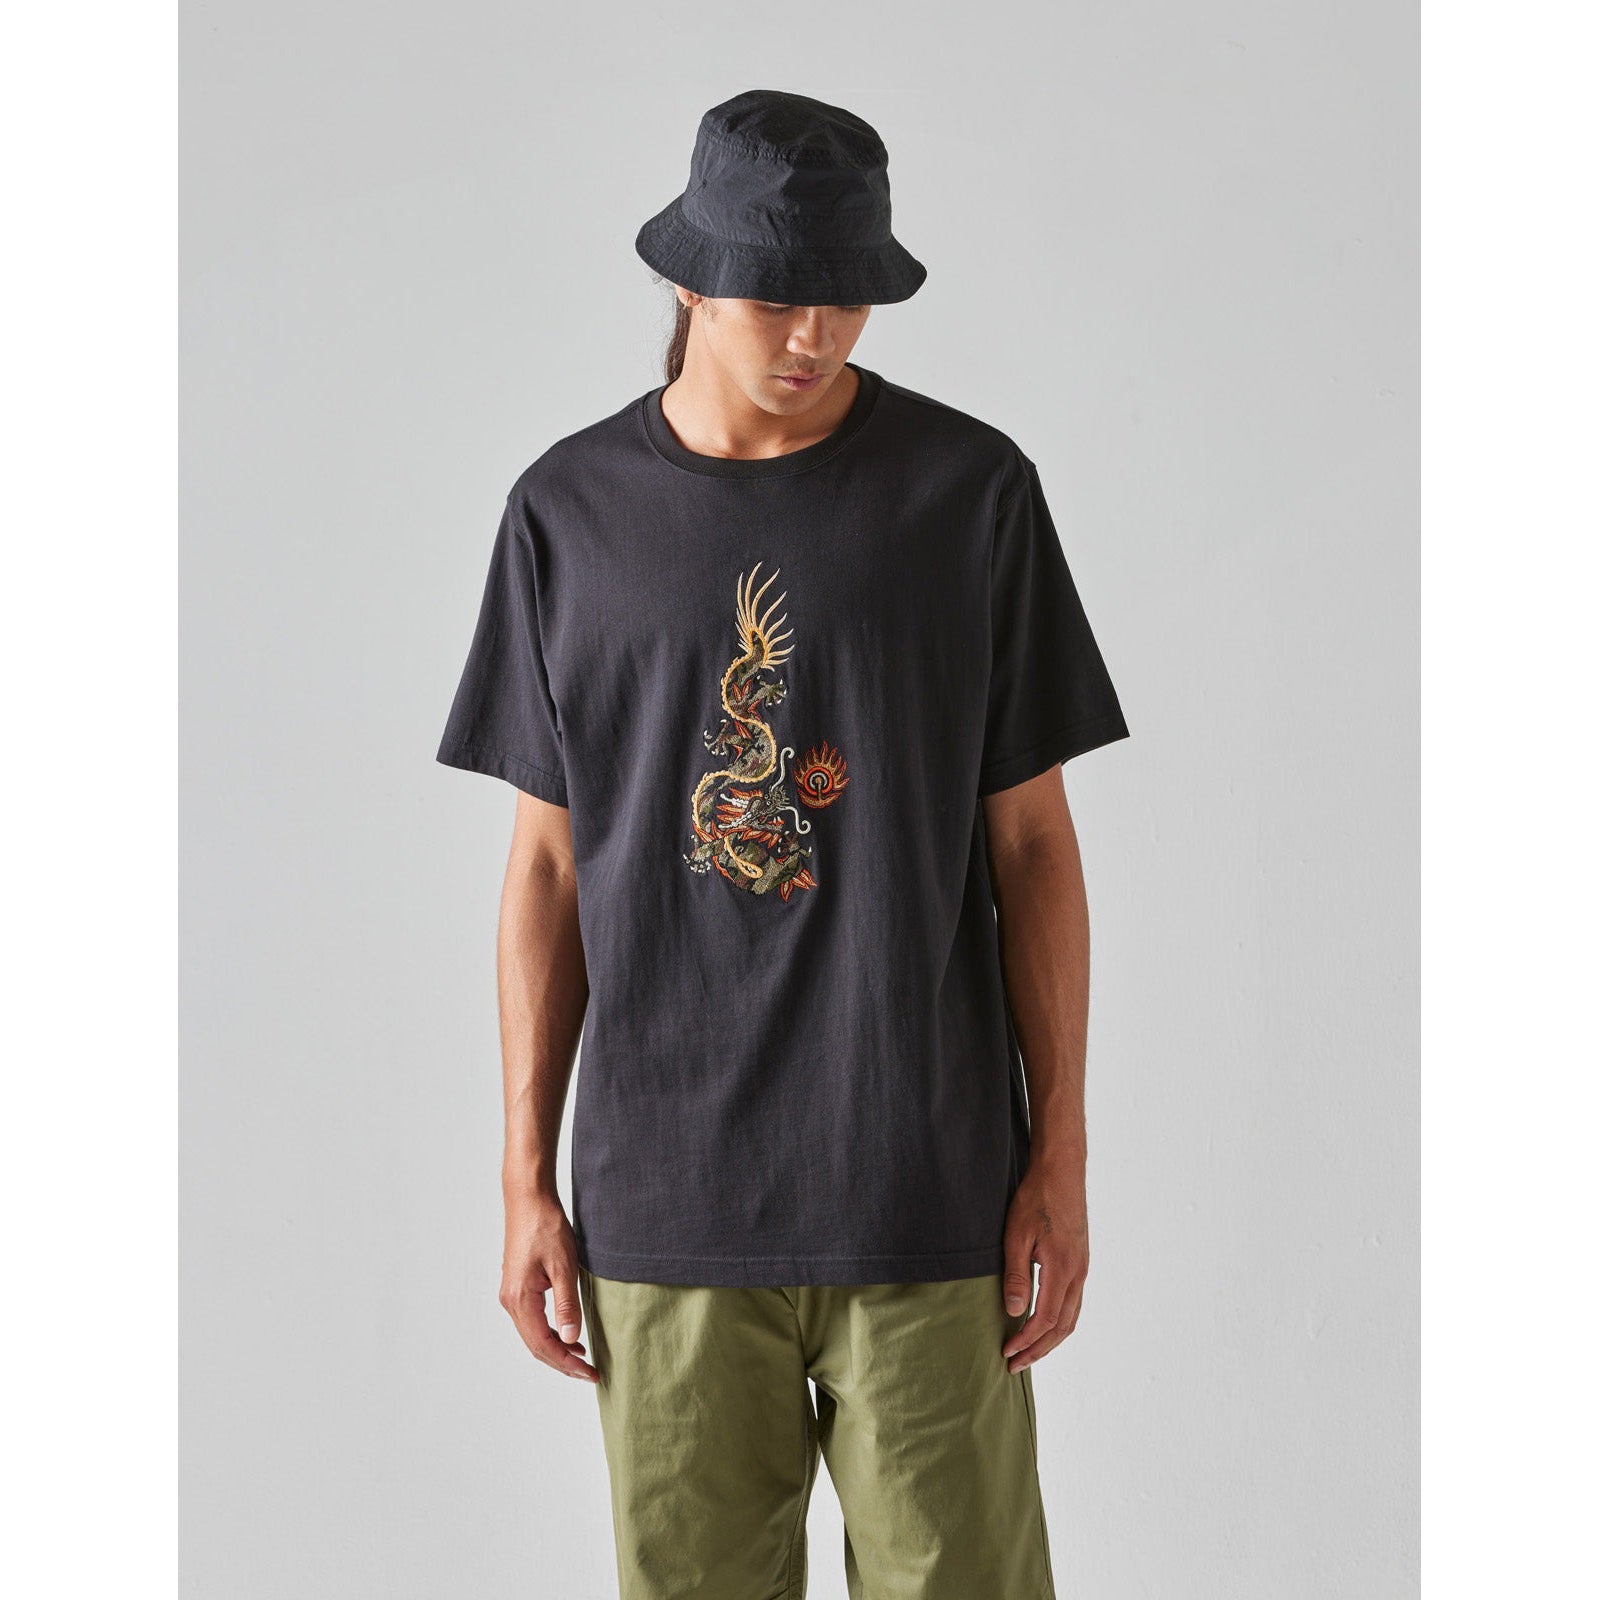 Maharishi Men Original Dragon T - Shirt relevant Black - T - SHIRTS Canada